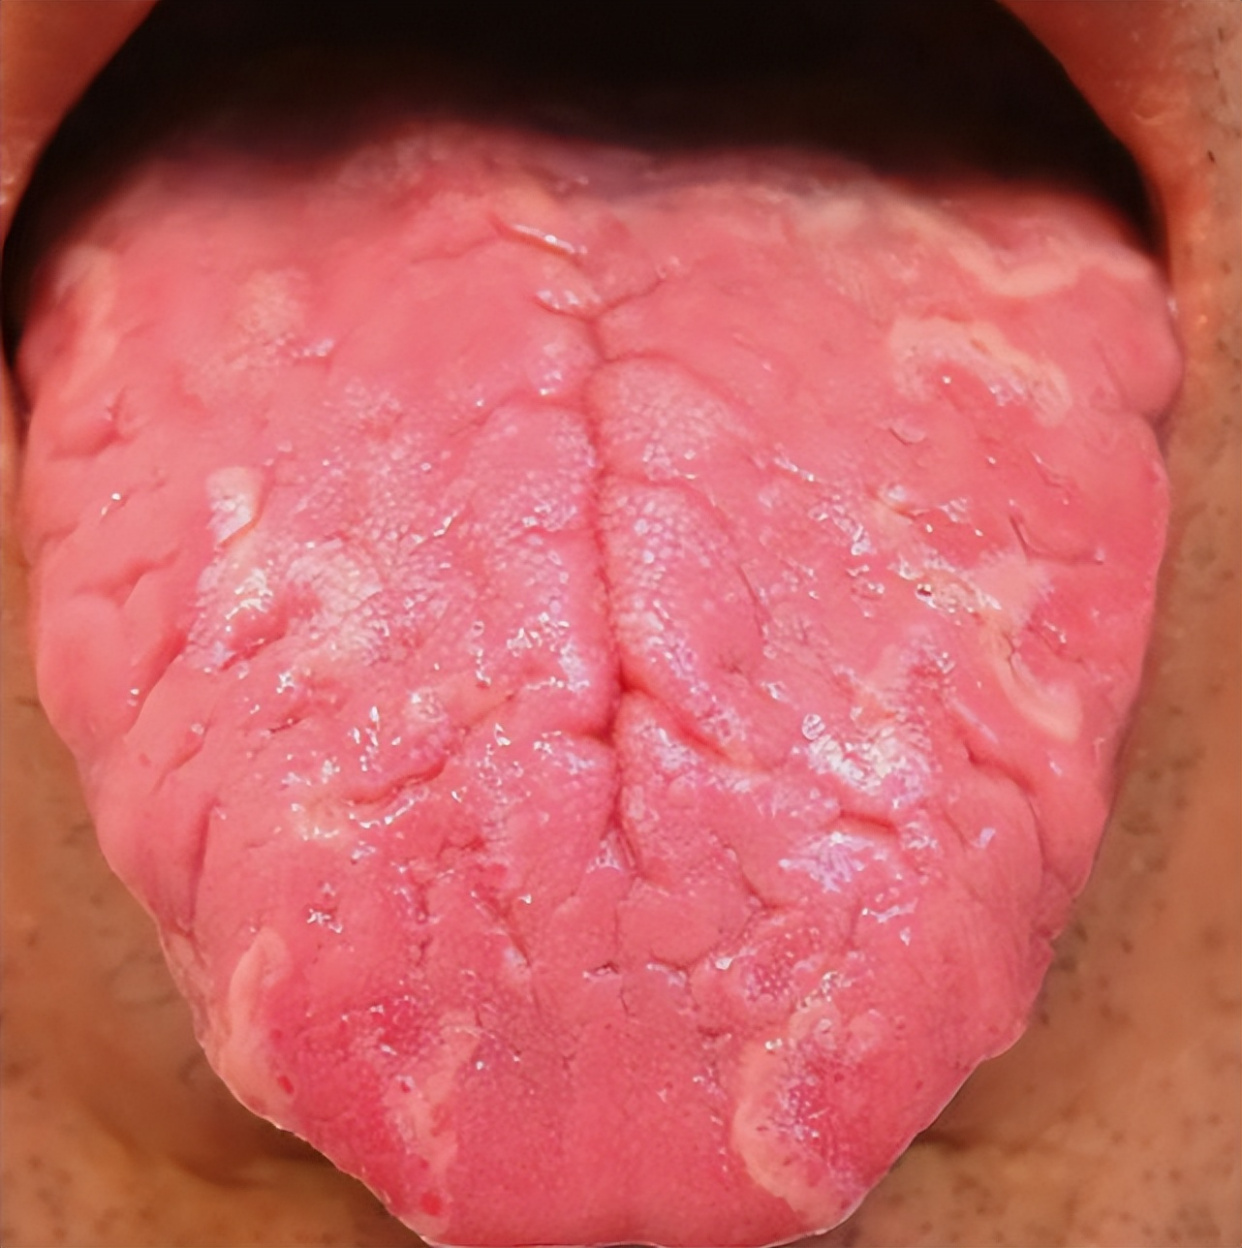 舌头有裂纹是怎么了?教你辨别四种常见裂纹舌,看看你是哪一种?